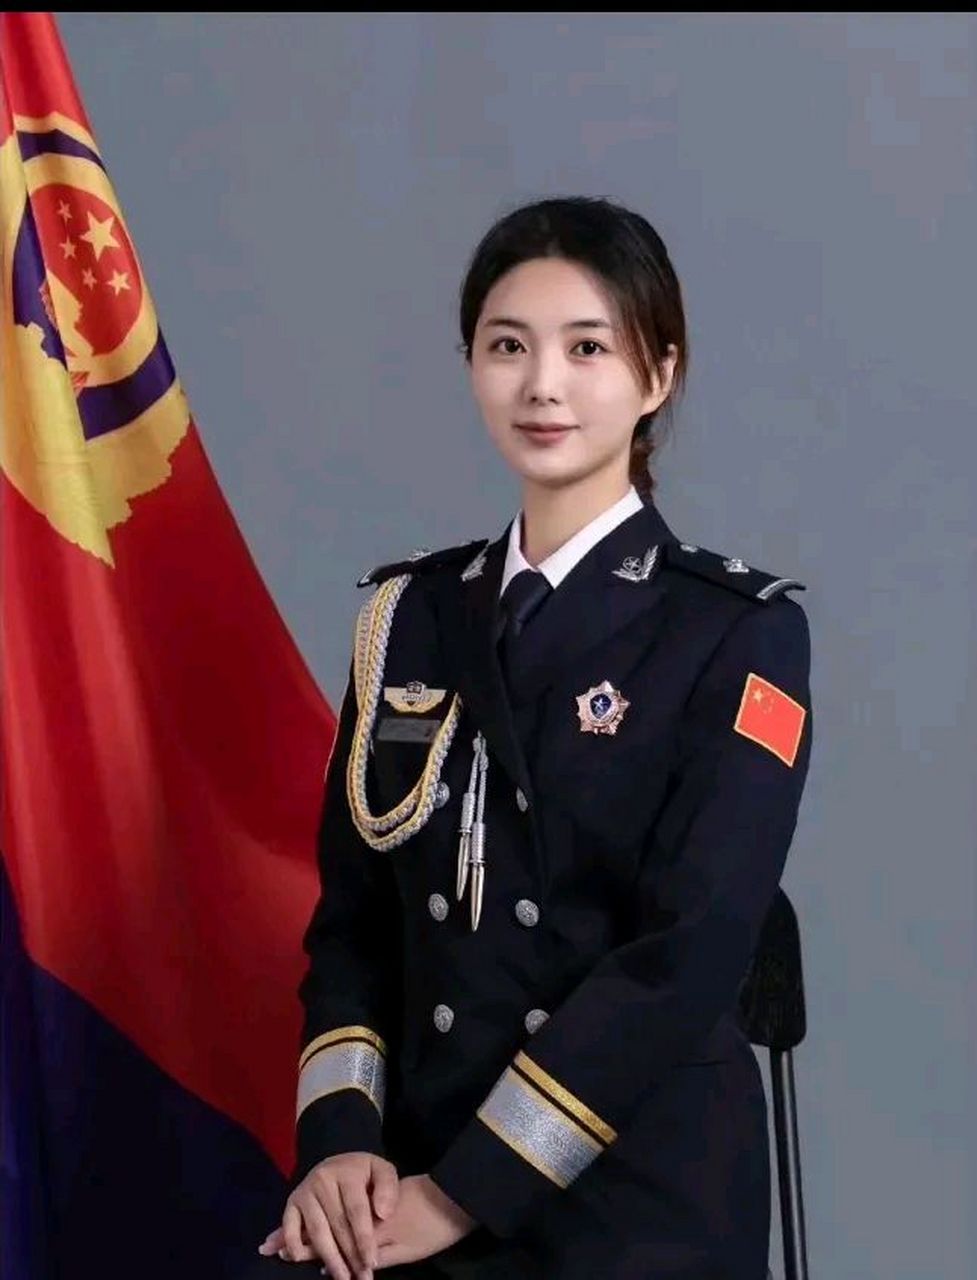 中国第一女警花图片